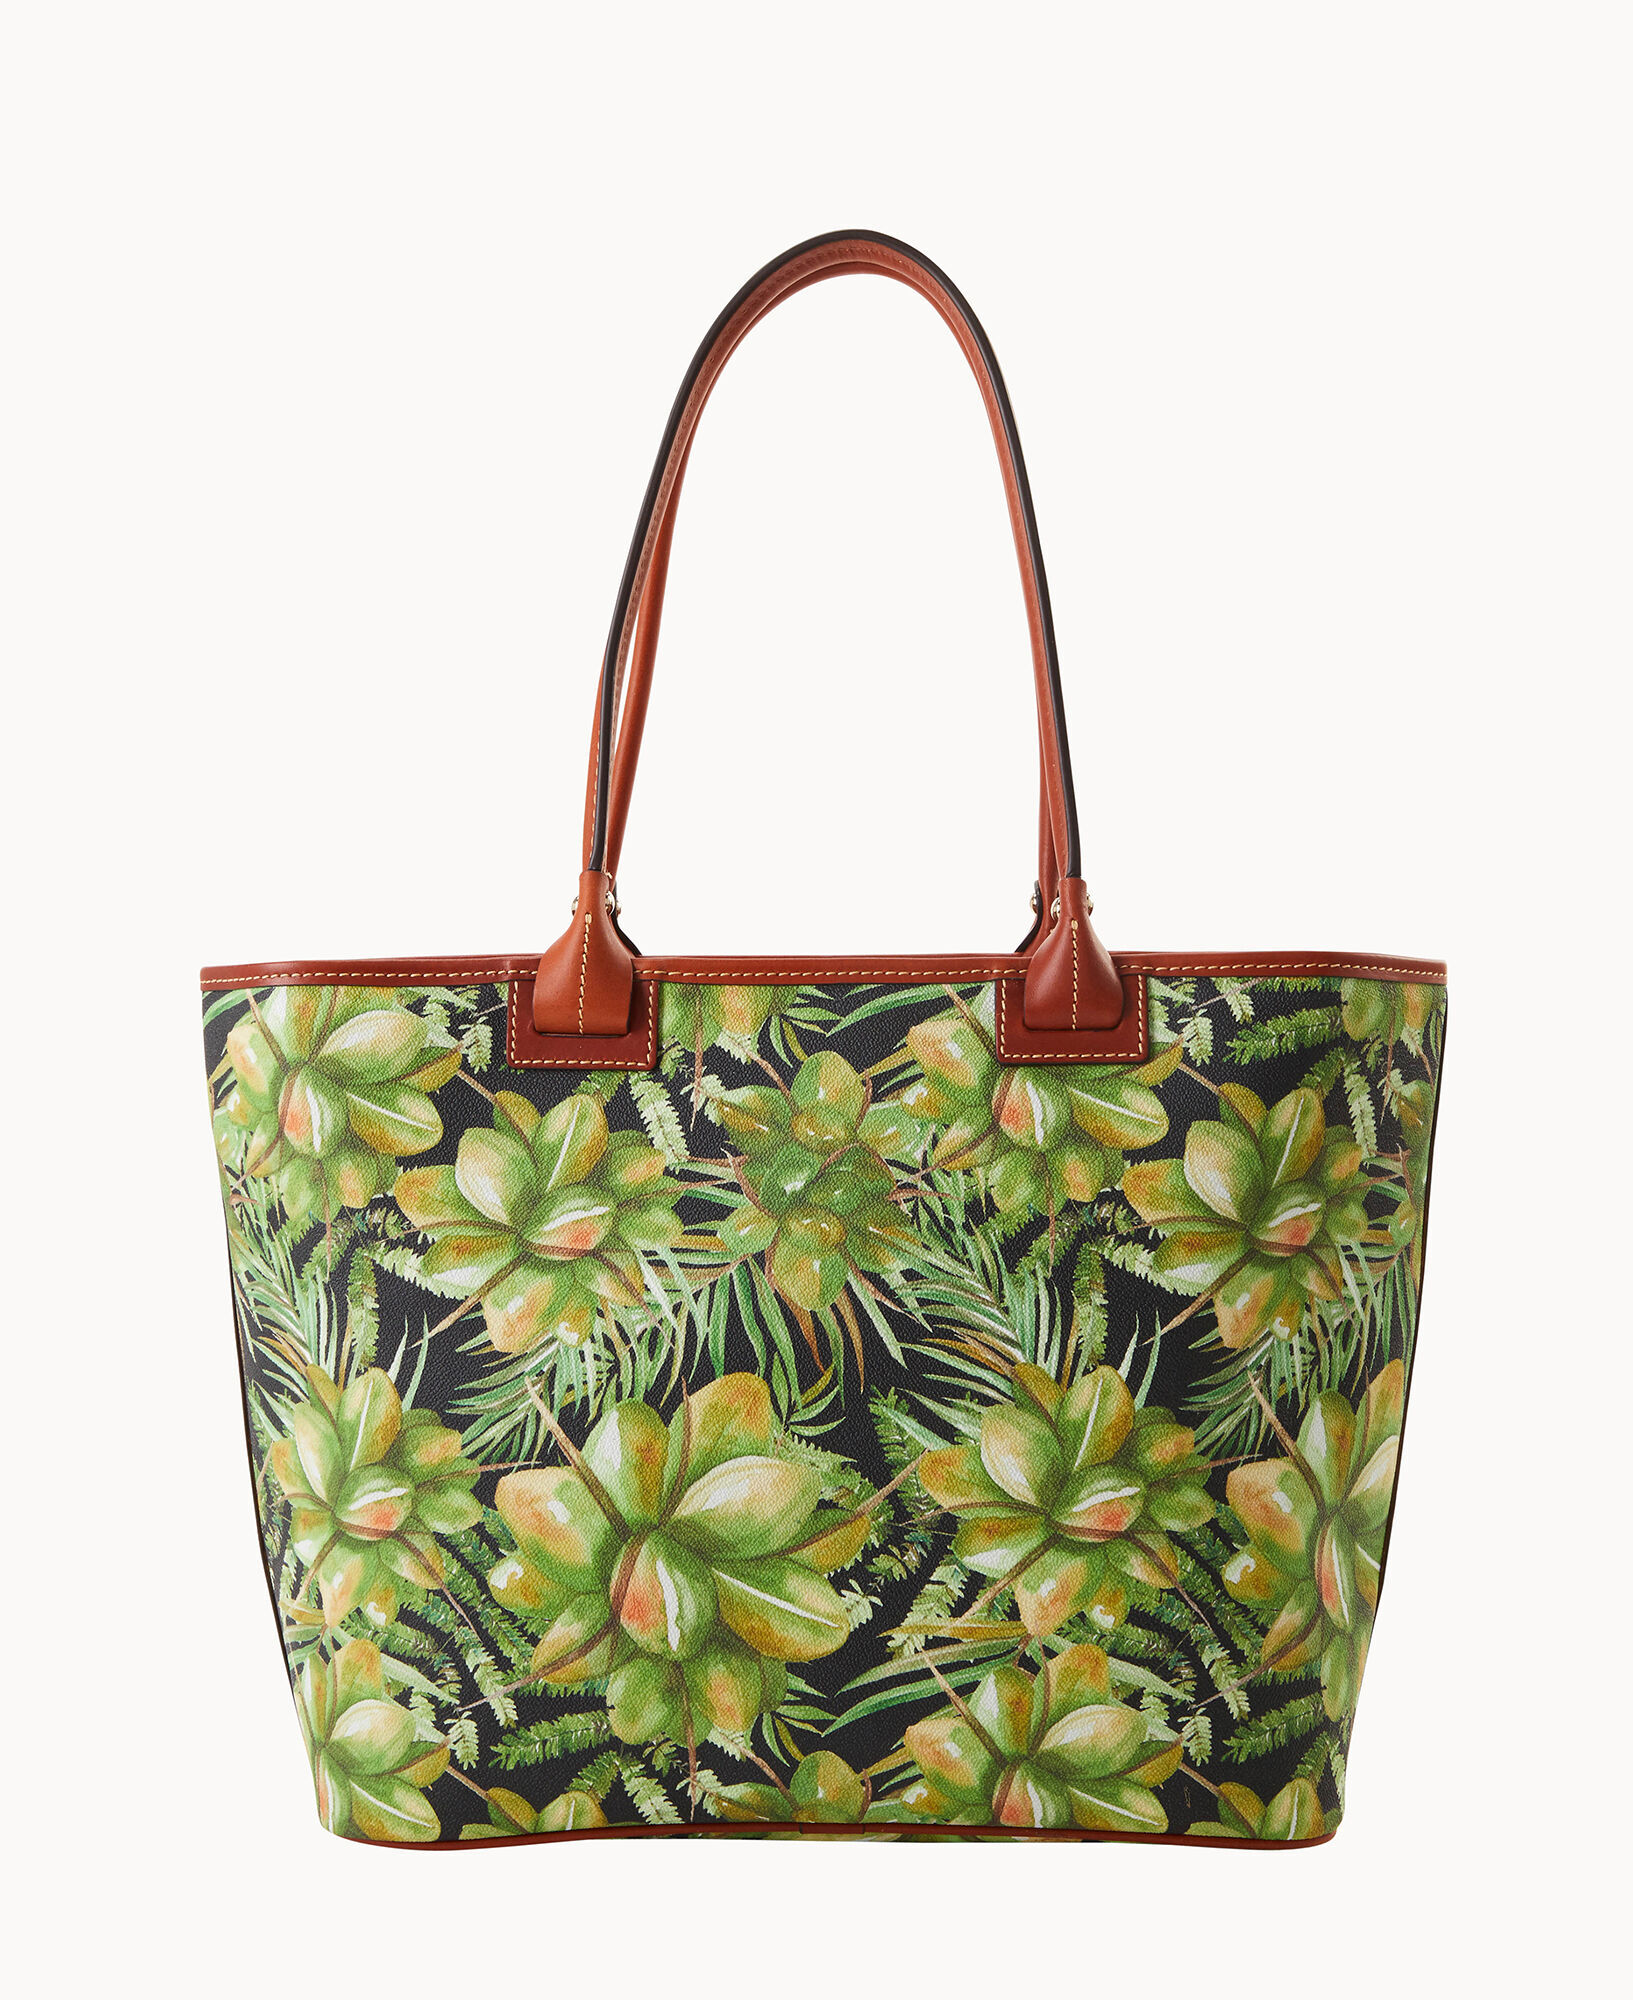 Handbag Designer By Dooney And Bourke Size: Large